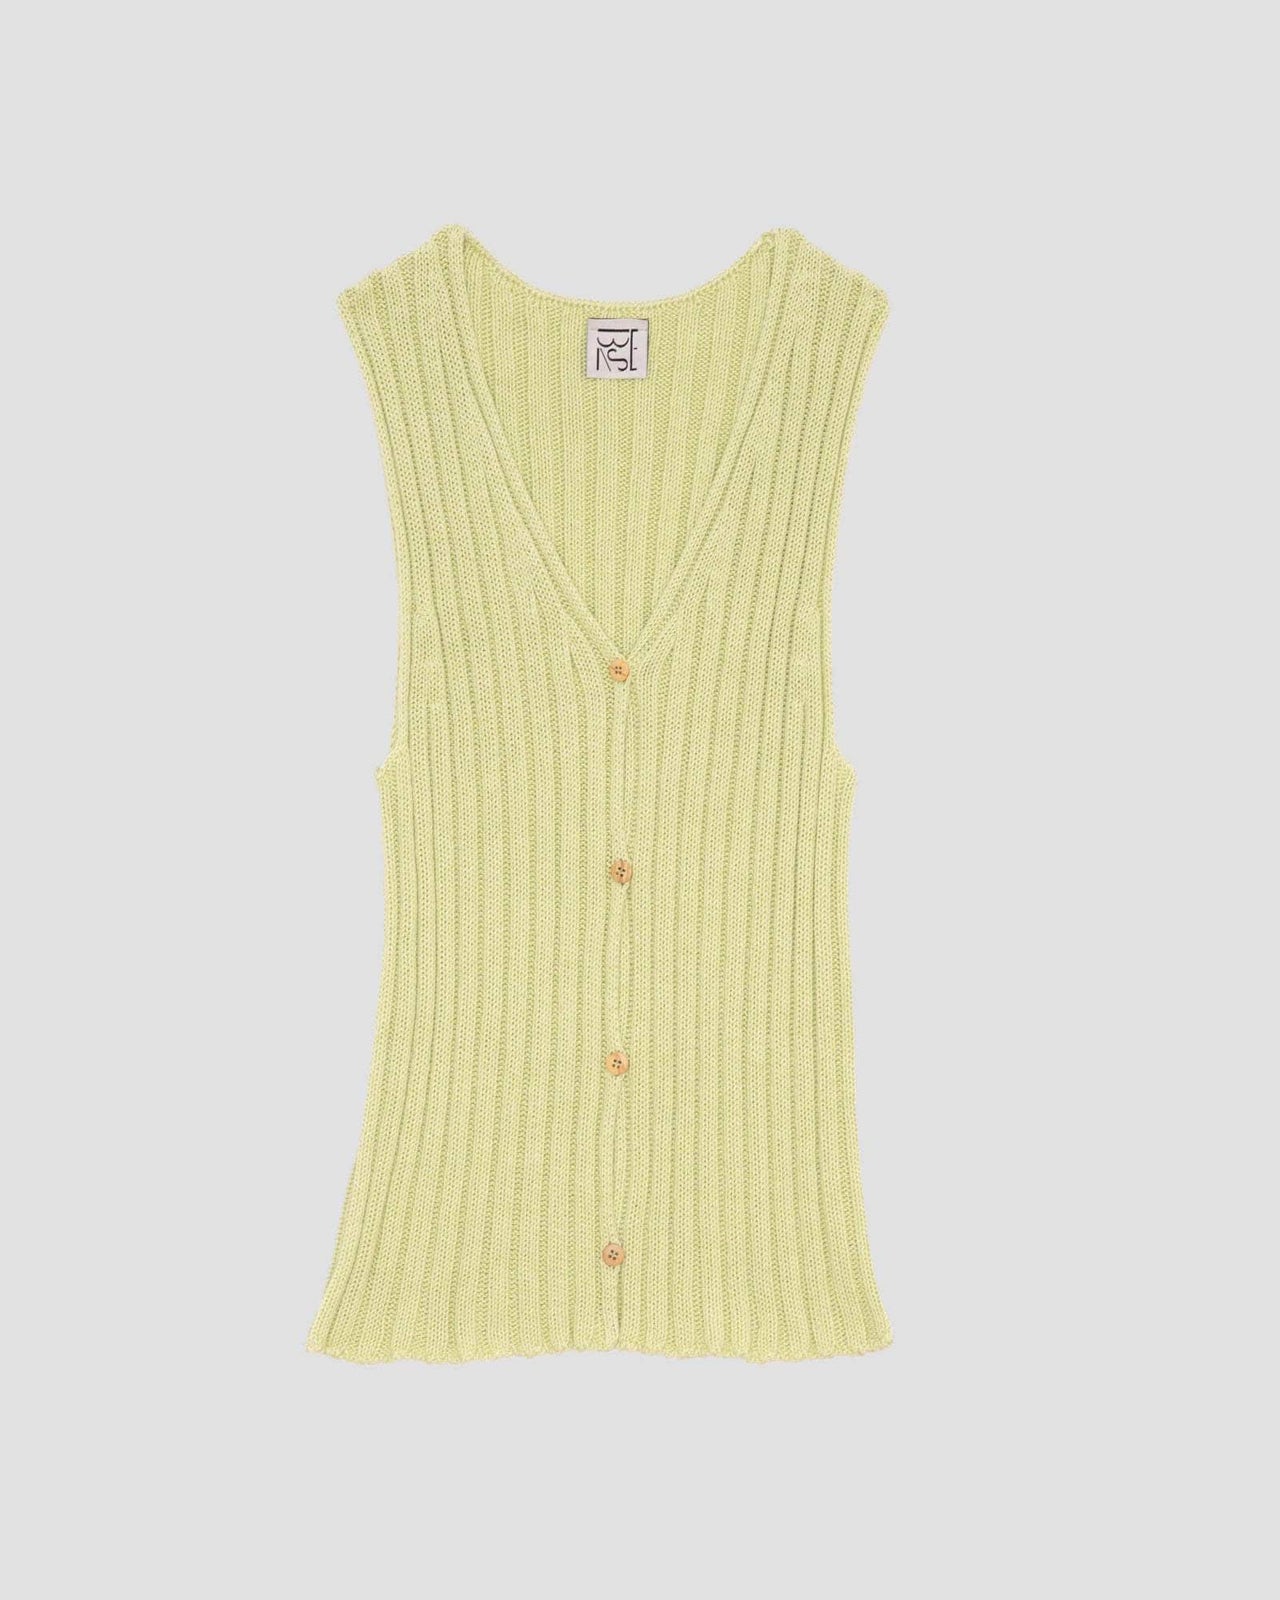 Loulou Vest in assortment | Organic cotton knit | en | Baserange